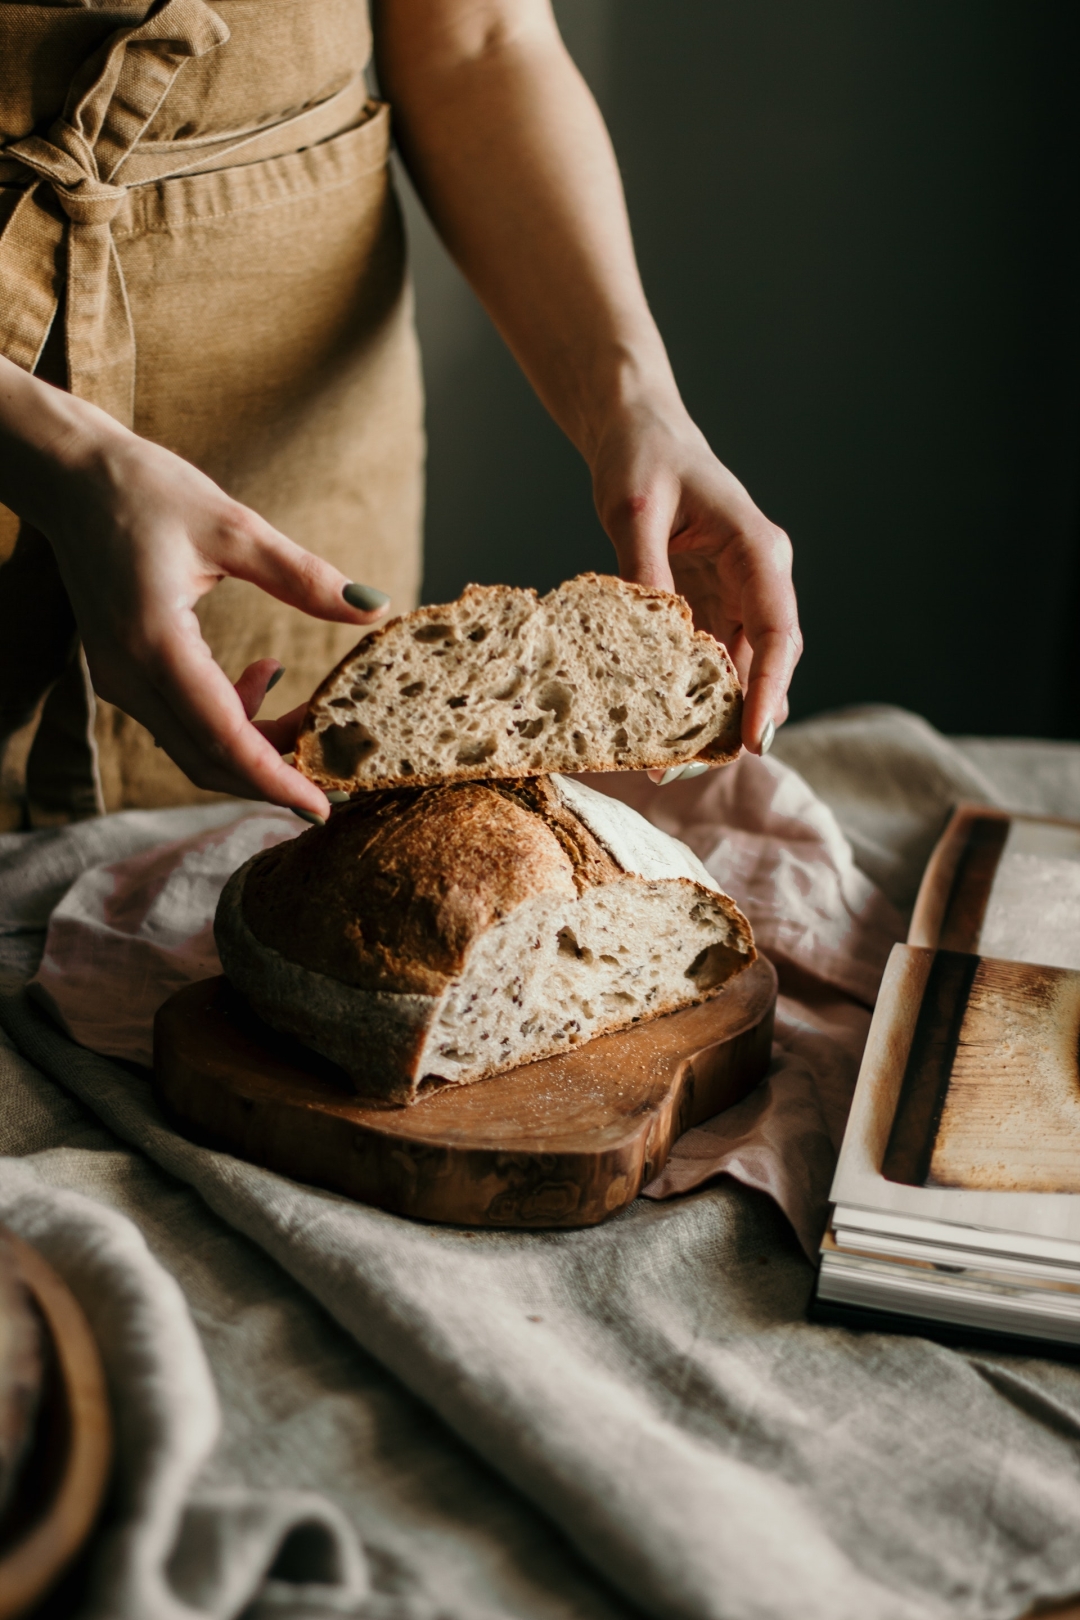 Ako kod kuće želite napraviti vrhunski sourdough kruh, sada to možete bez puno napora